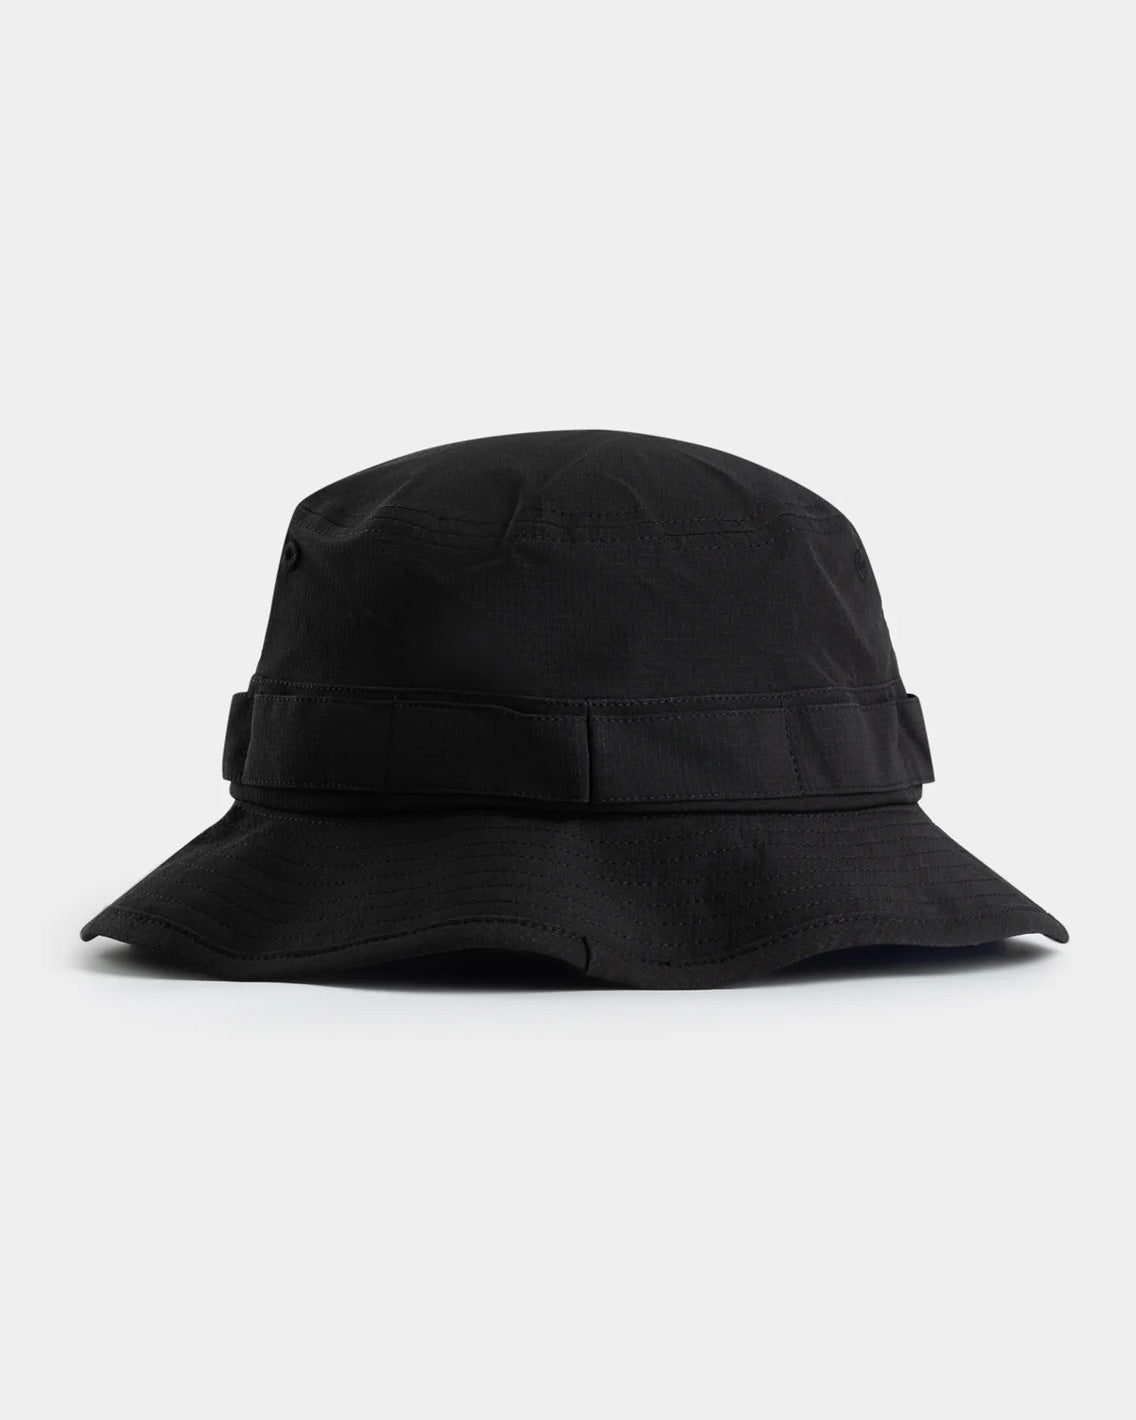 Dickies - Ripstop Boonie Hat - Black